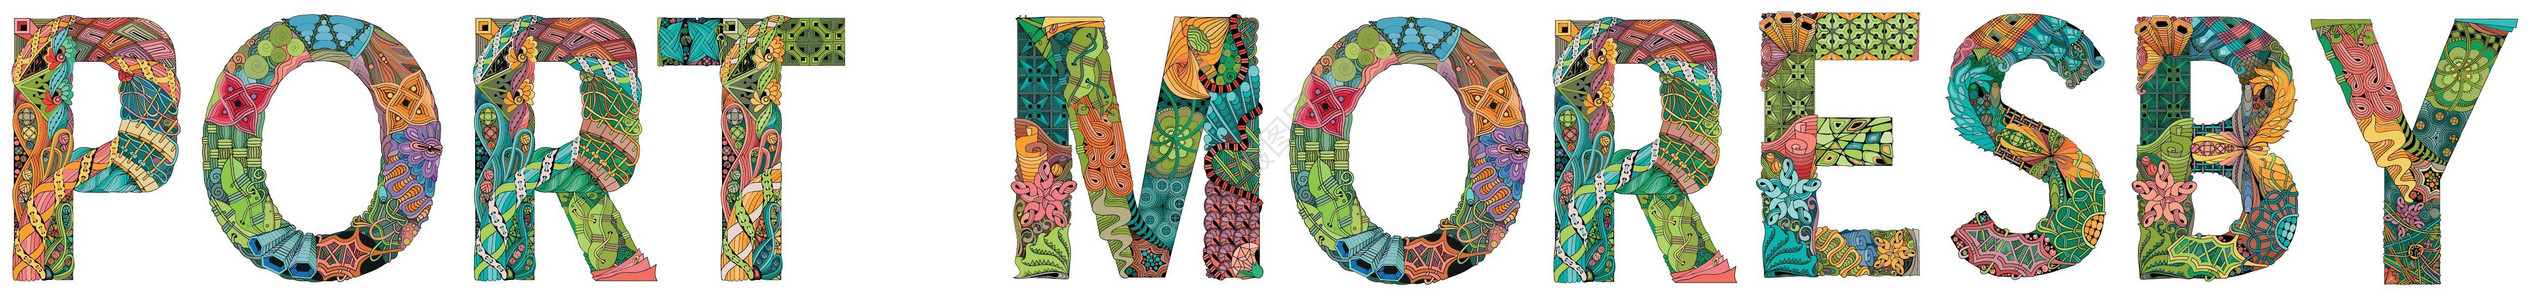 莫尔兹比港是巴布亚新几内亚的首都和最大城市 用于装饰的矢量装饰 zentangle 对象插画